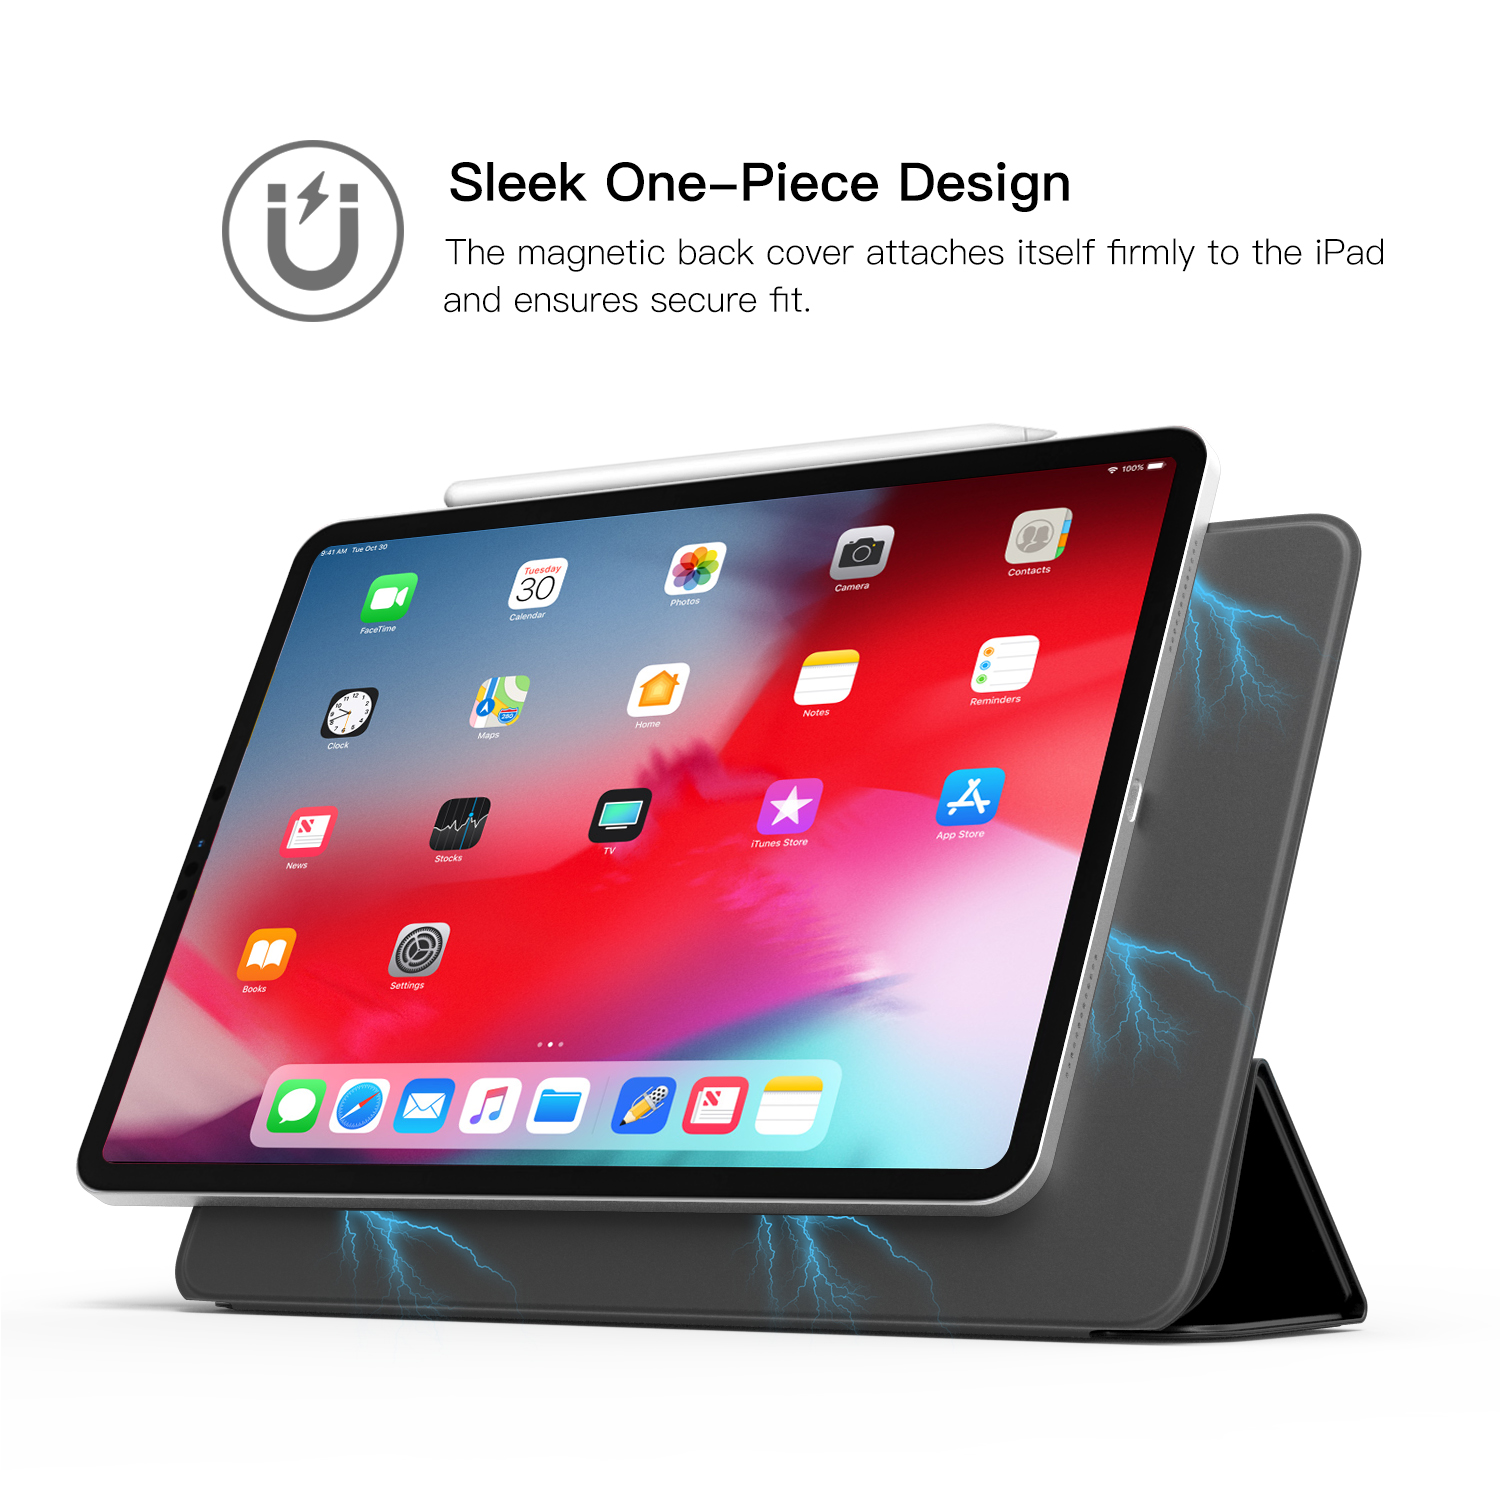 Ultradünn Smart Case mit Aoto Schlaf/Aufwach Funktion für iPad Pro 11 2018 TiMOVO Hülle für iPad Pro 11 2018 Schutzhülle mit Magnetverschluss Schwarz 